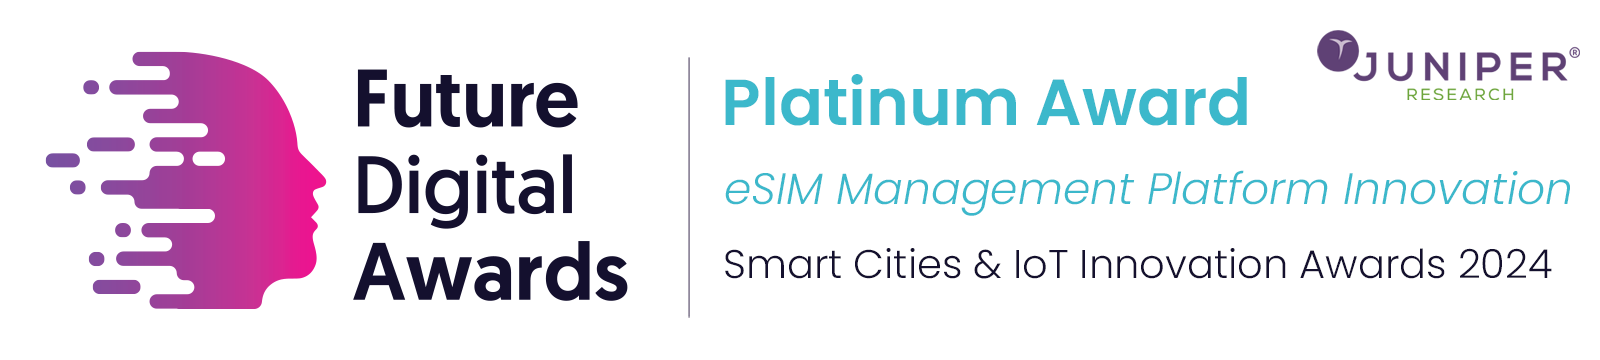 Juniper's Smart Cities & IoT Innovation Awards 2024 Platinum award for eSIM Management platform innovation 